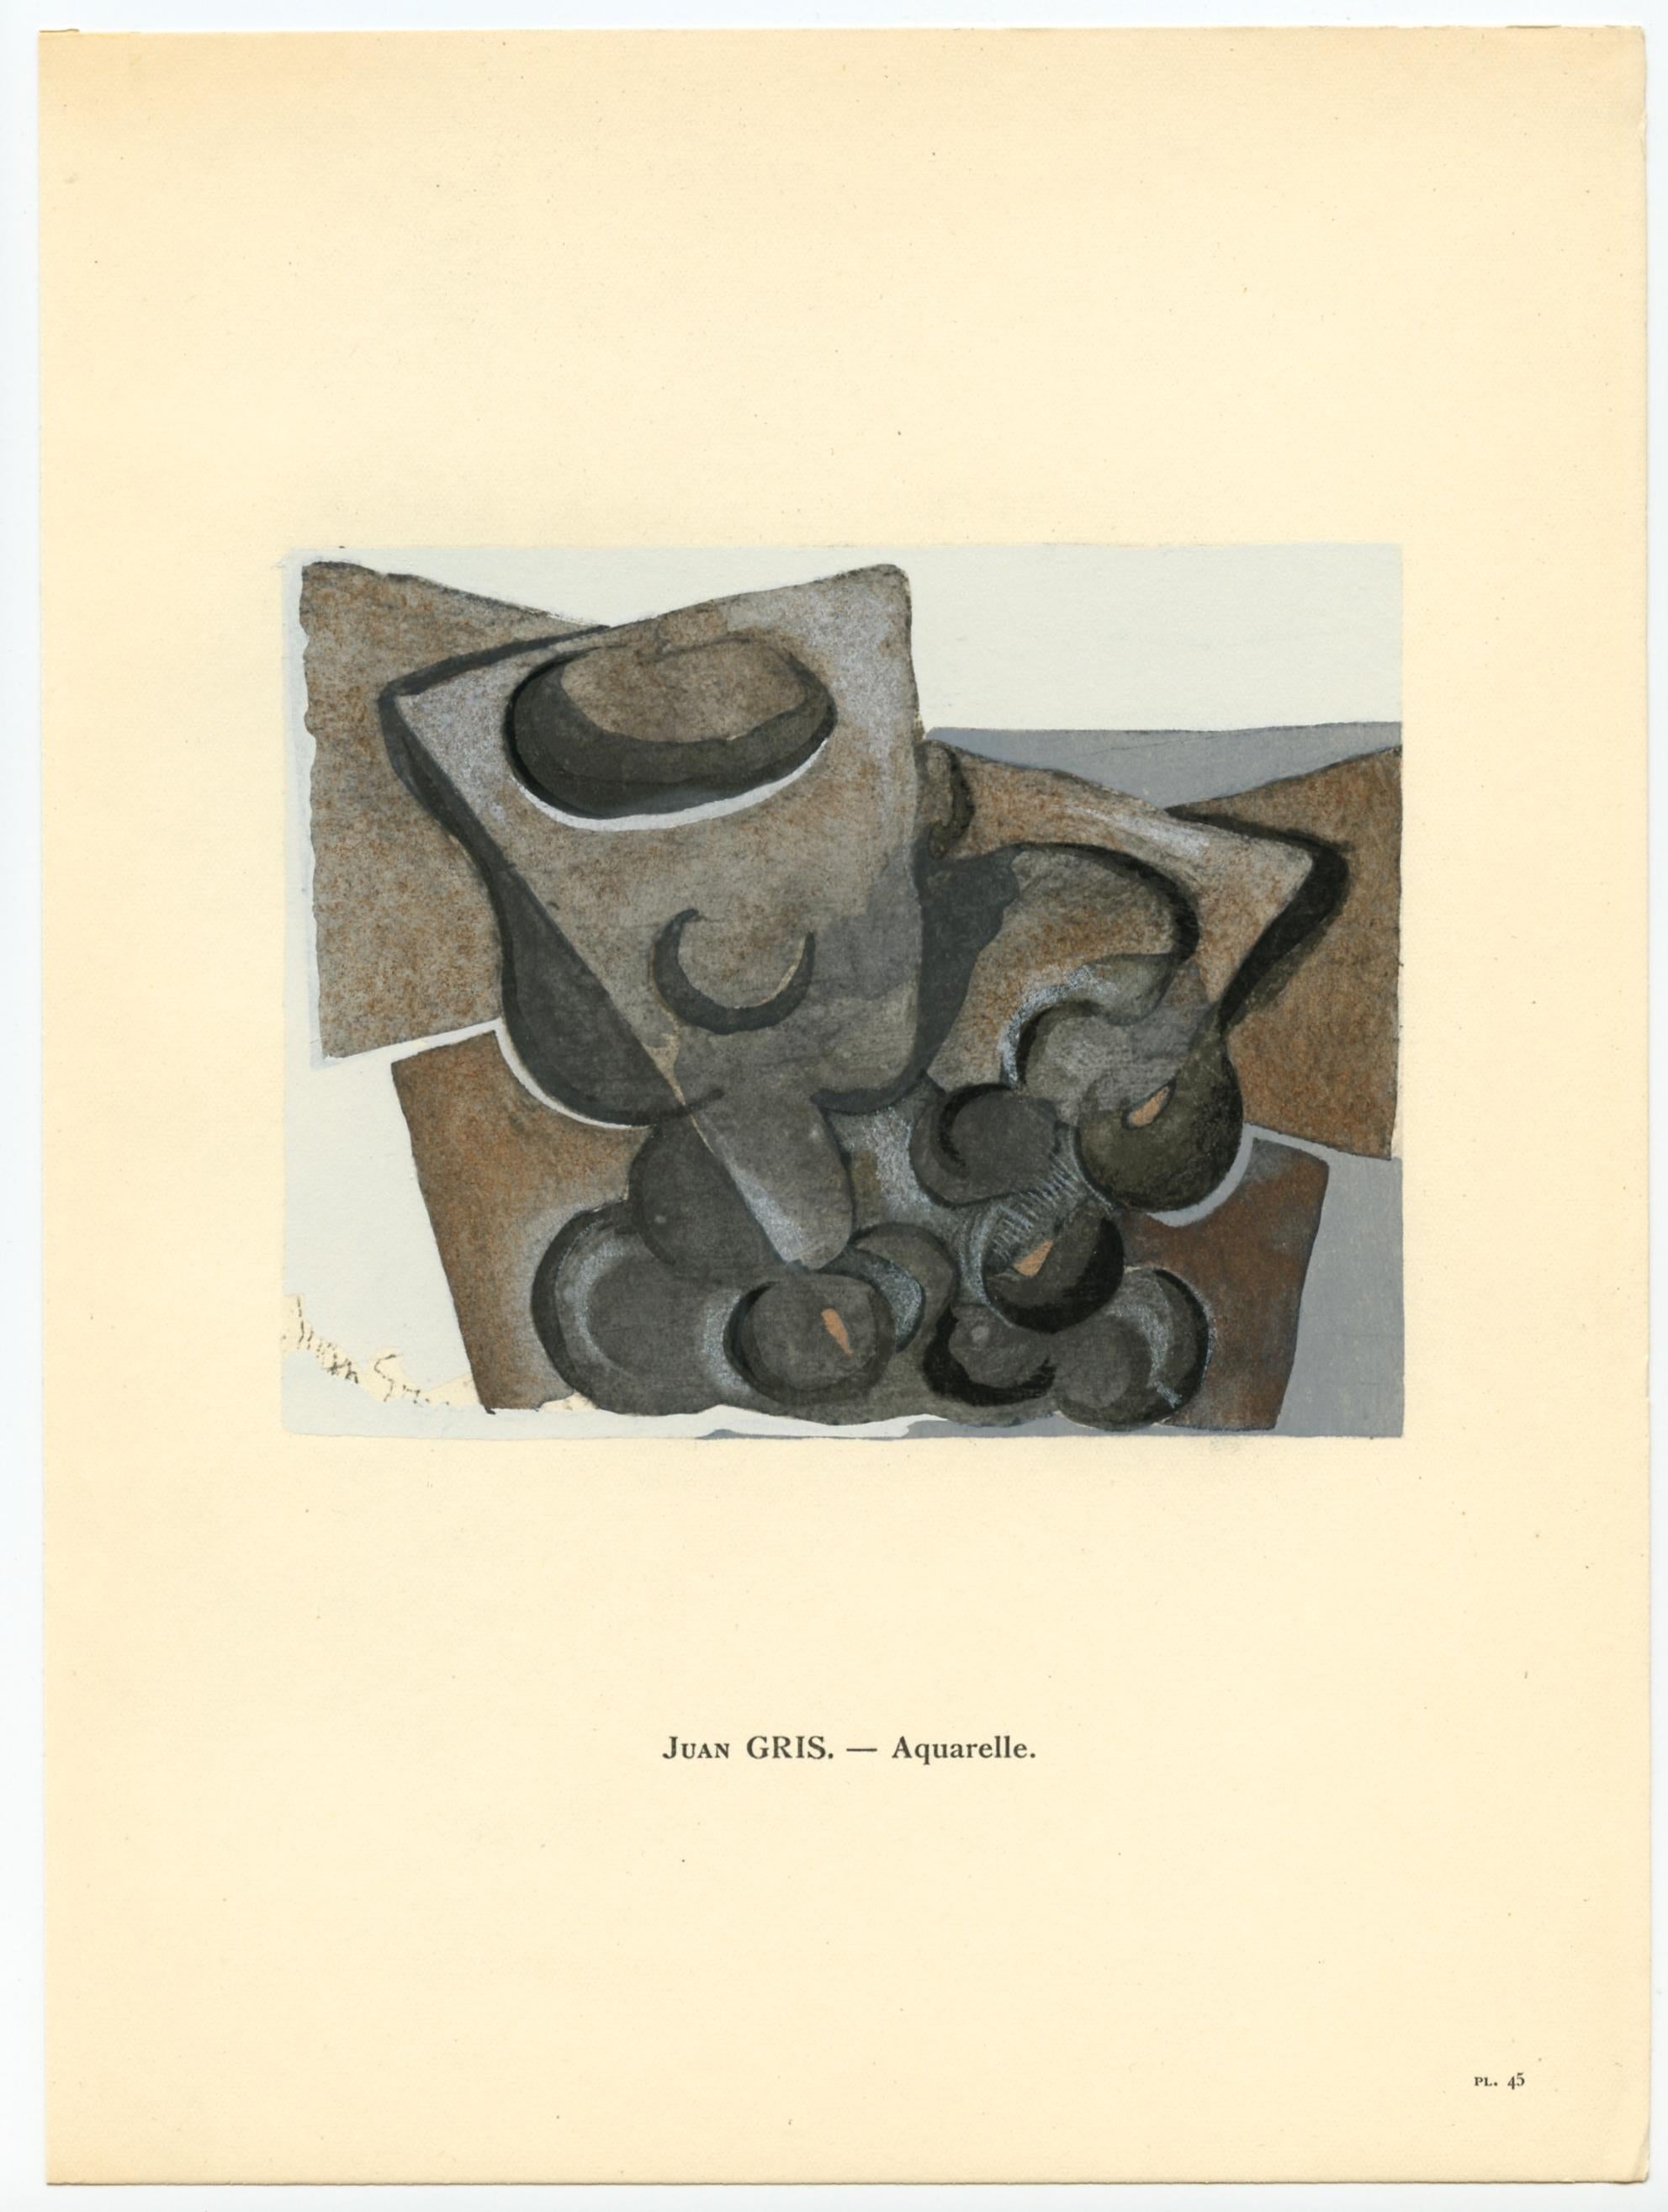 Support : pochoir (après l'aquarelle). Imprimé à Paris en 1929 dans l'atelier de Daniel Jacomet pour L'Art Cubiste. Taille de l'image : 4 1/2 x 5 1/2 pouces (112 x 140 mm). Une inscription sous l'image identifie l'artiste. Signé dans la plaque (pas